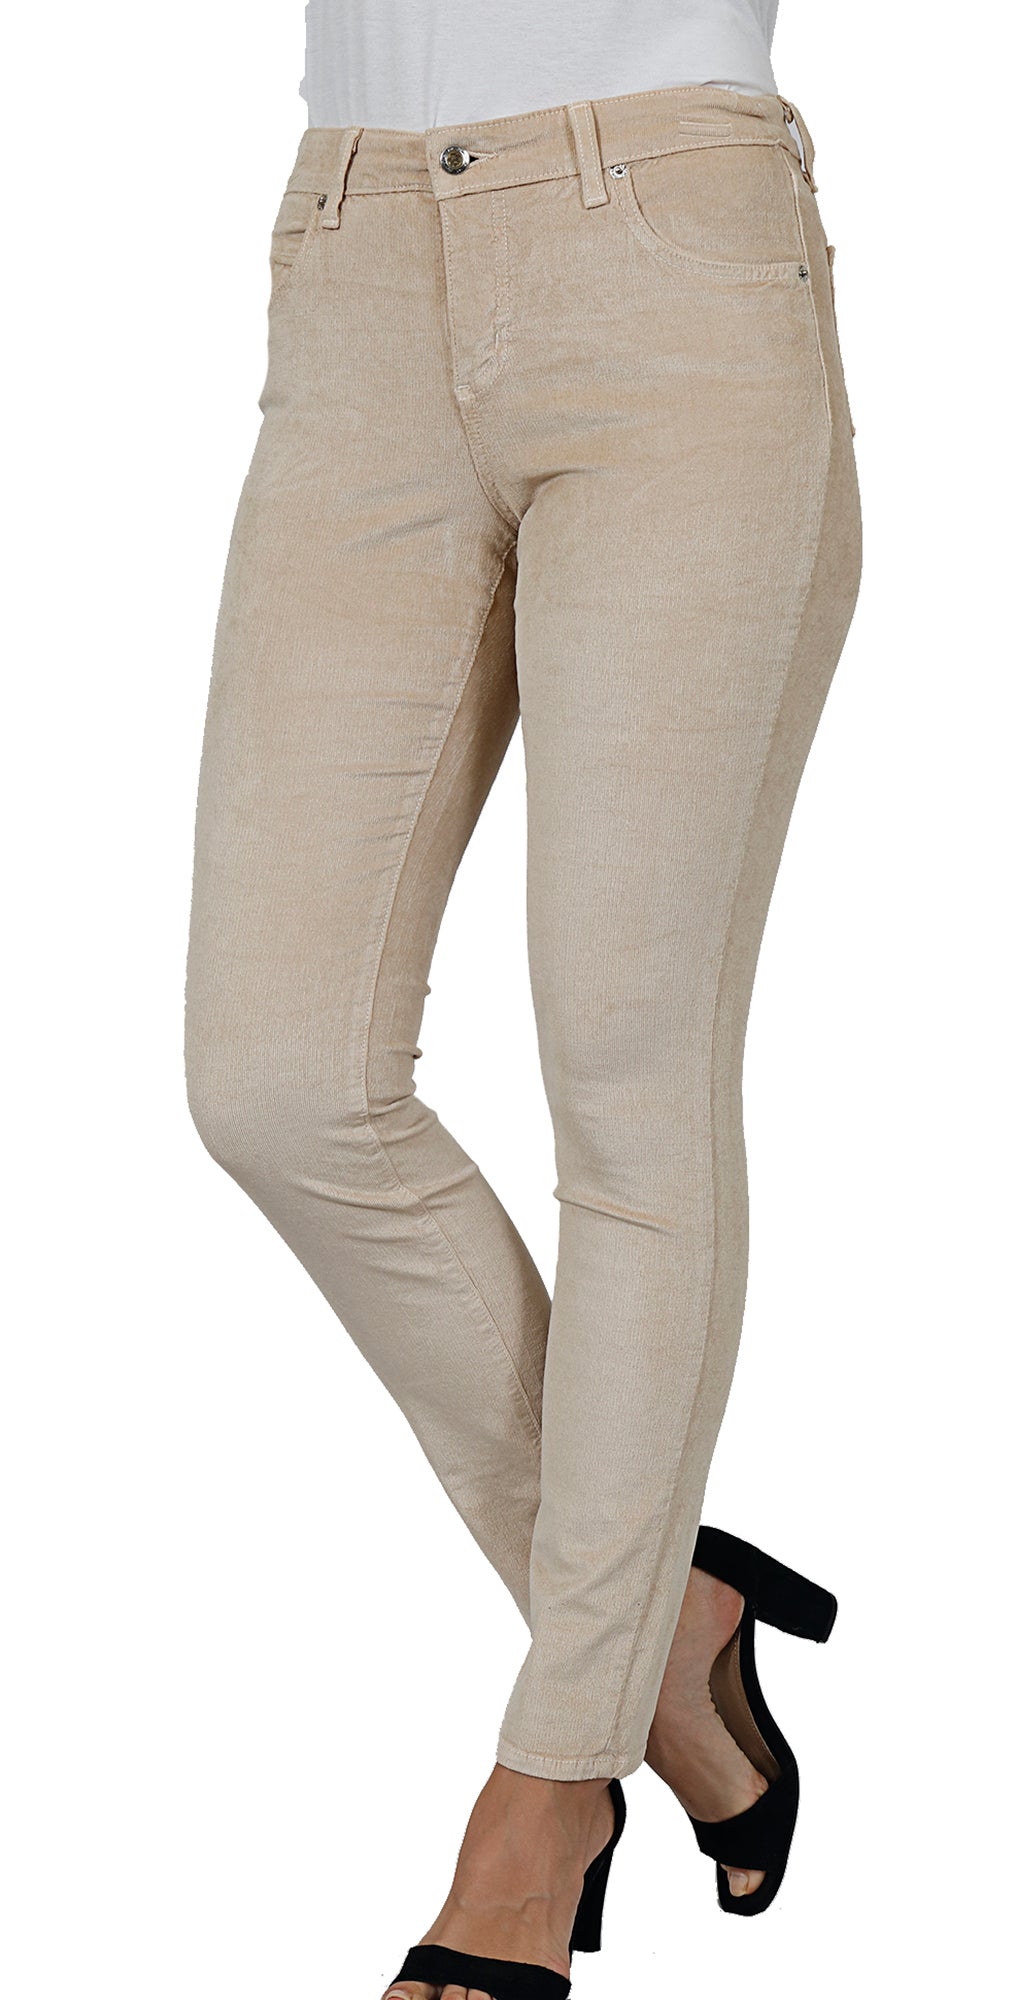 Corduroy legging, Simons, Shop Women's Leggings & Jeggings Online